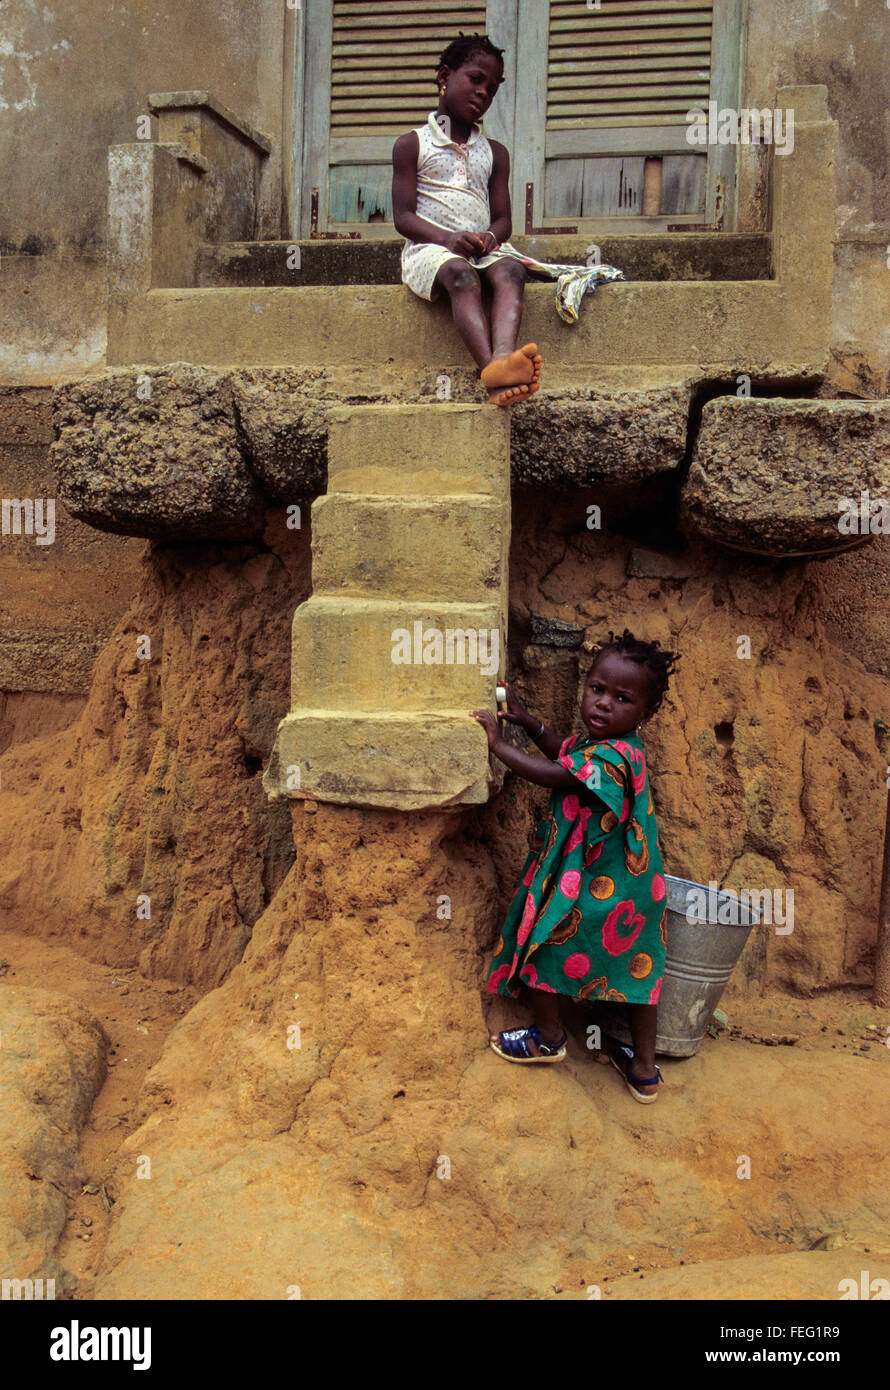 Sassandra, Costa d'Avorio (Costa d Avorio). Erosione provocata dalle pesanti piogge tropicali rendono difficile per i bambini per raggiungere la casa passi . Foto Stock